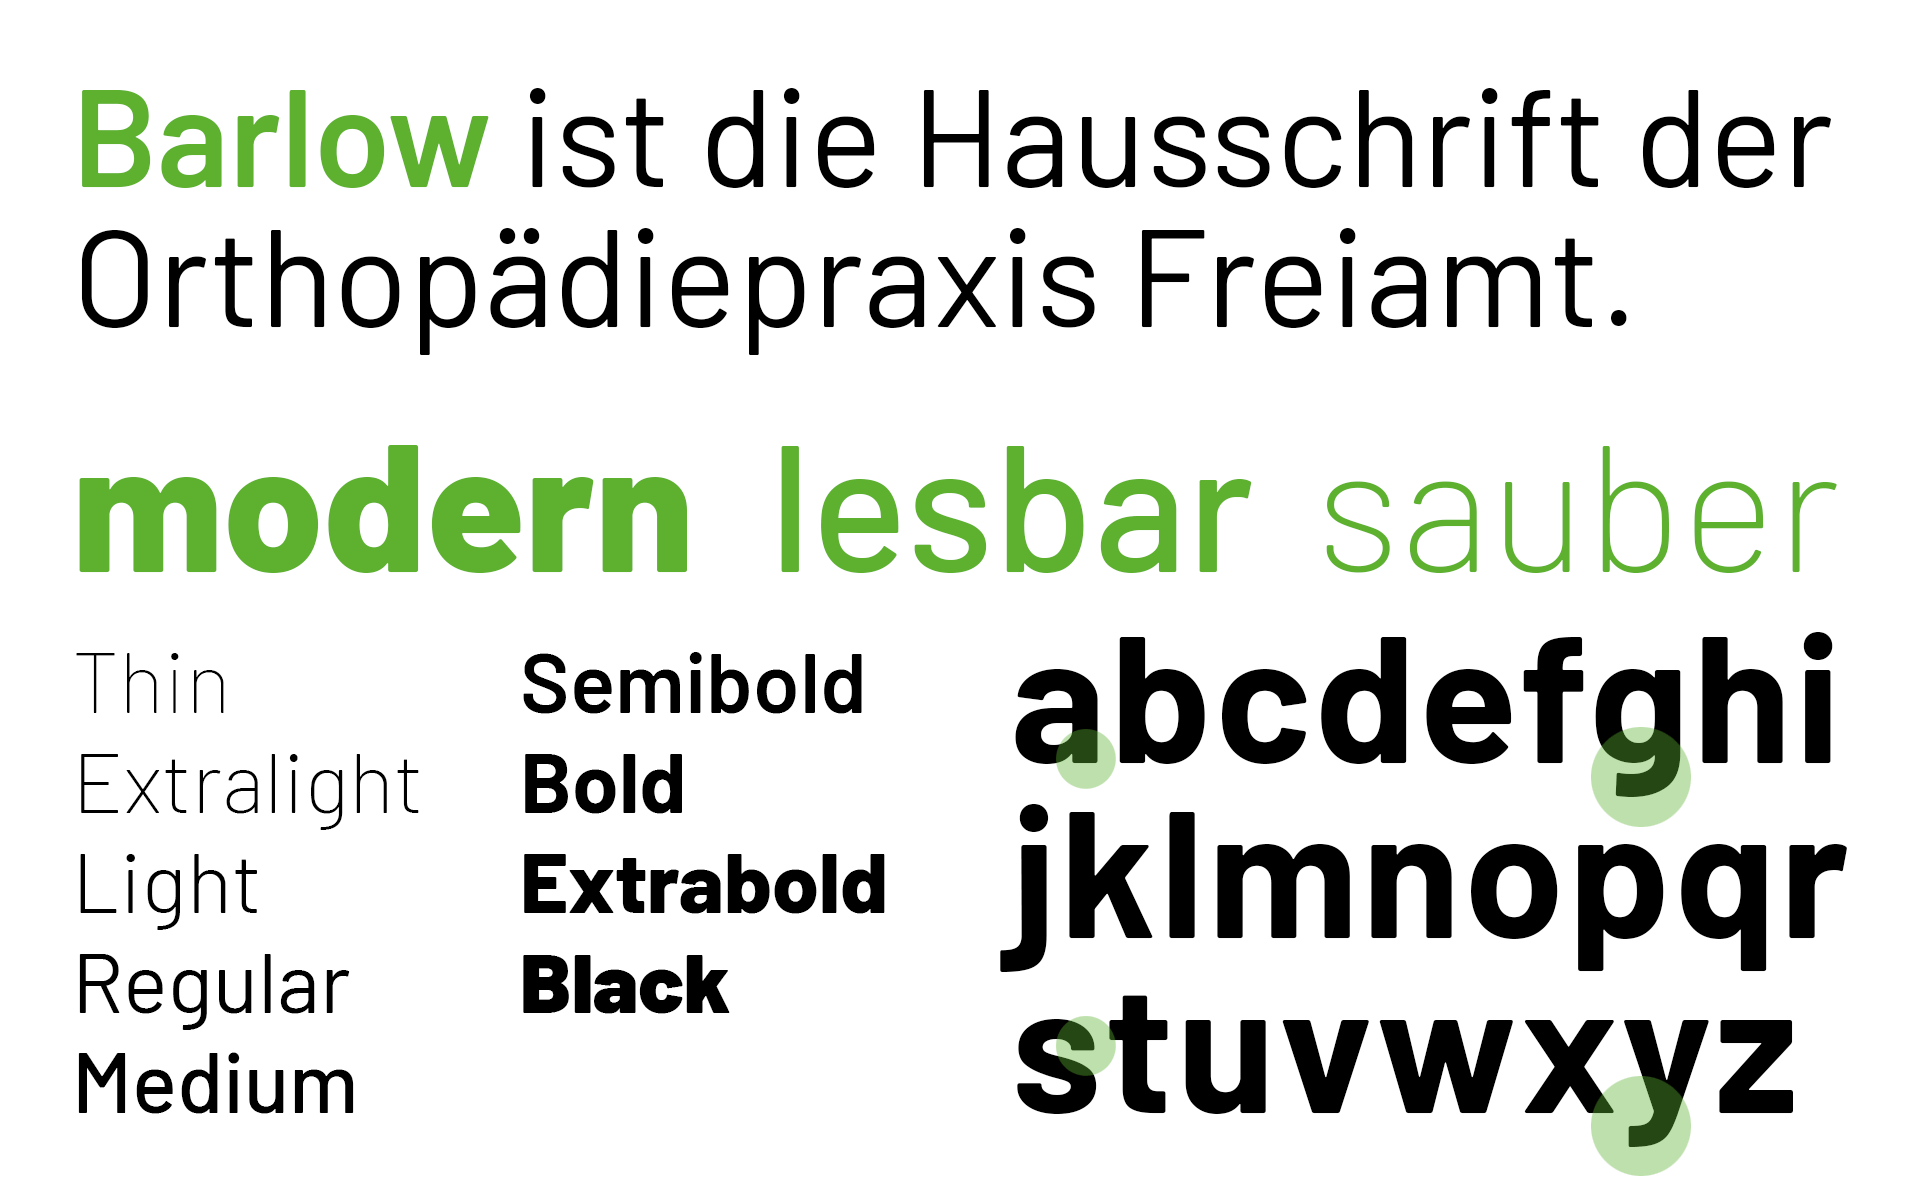 Corporate Design und Webdesign, Orthopädiepraxis Freiamt in der Schweiz, Hausschrift, Corporate Typeface